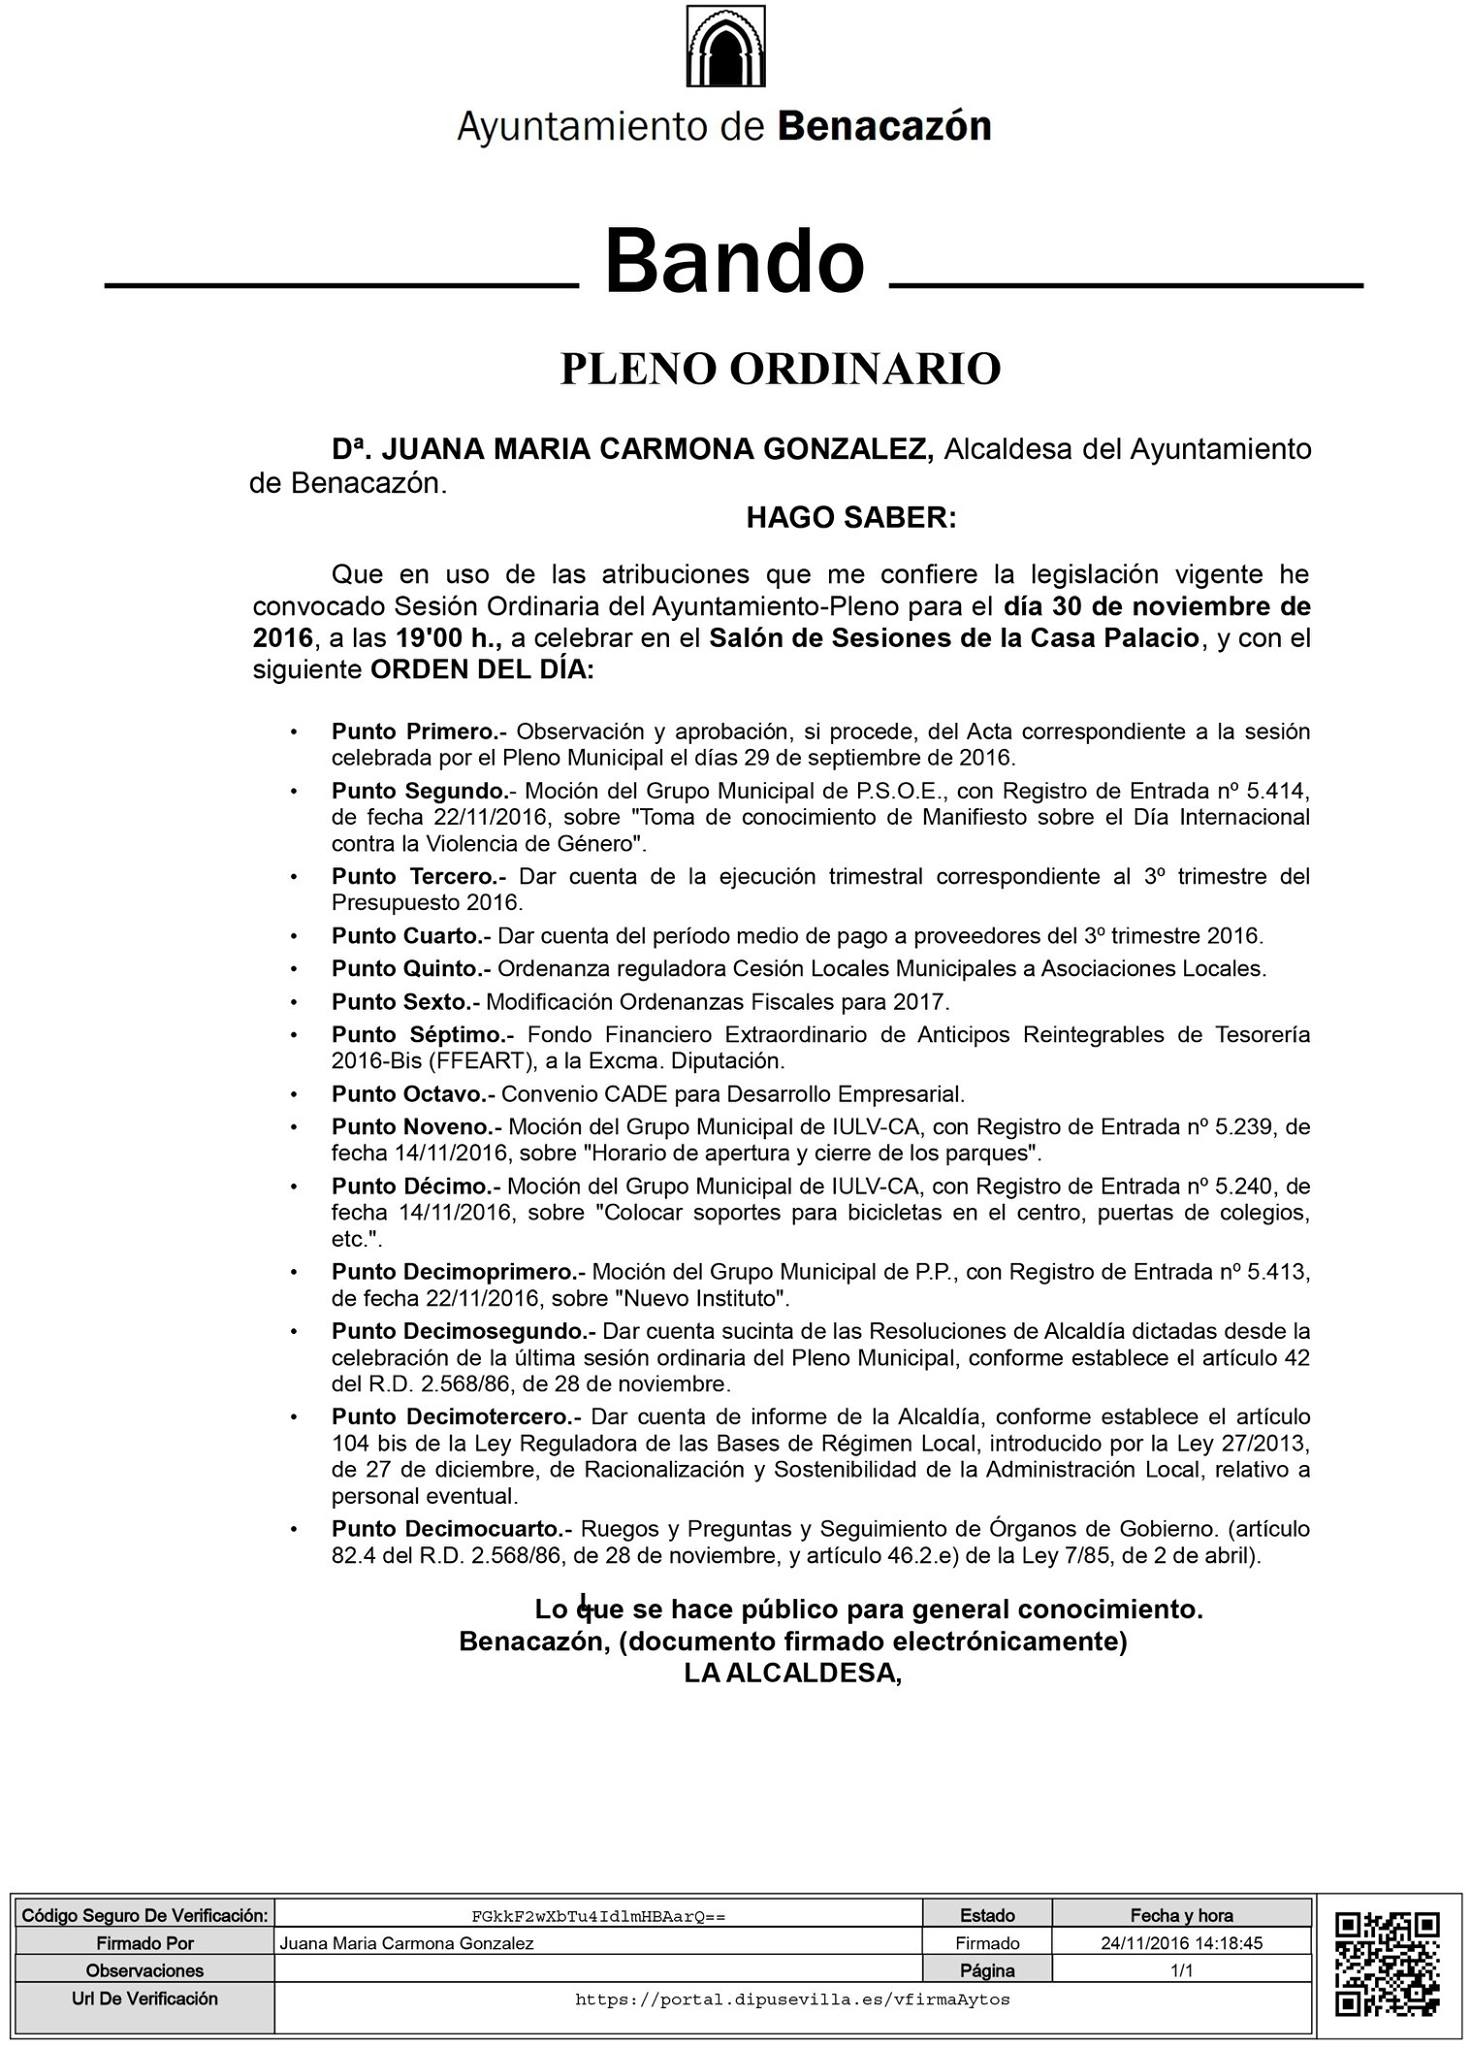 Alcaldía_Bando Pleno 30.11.2016